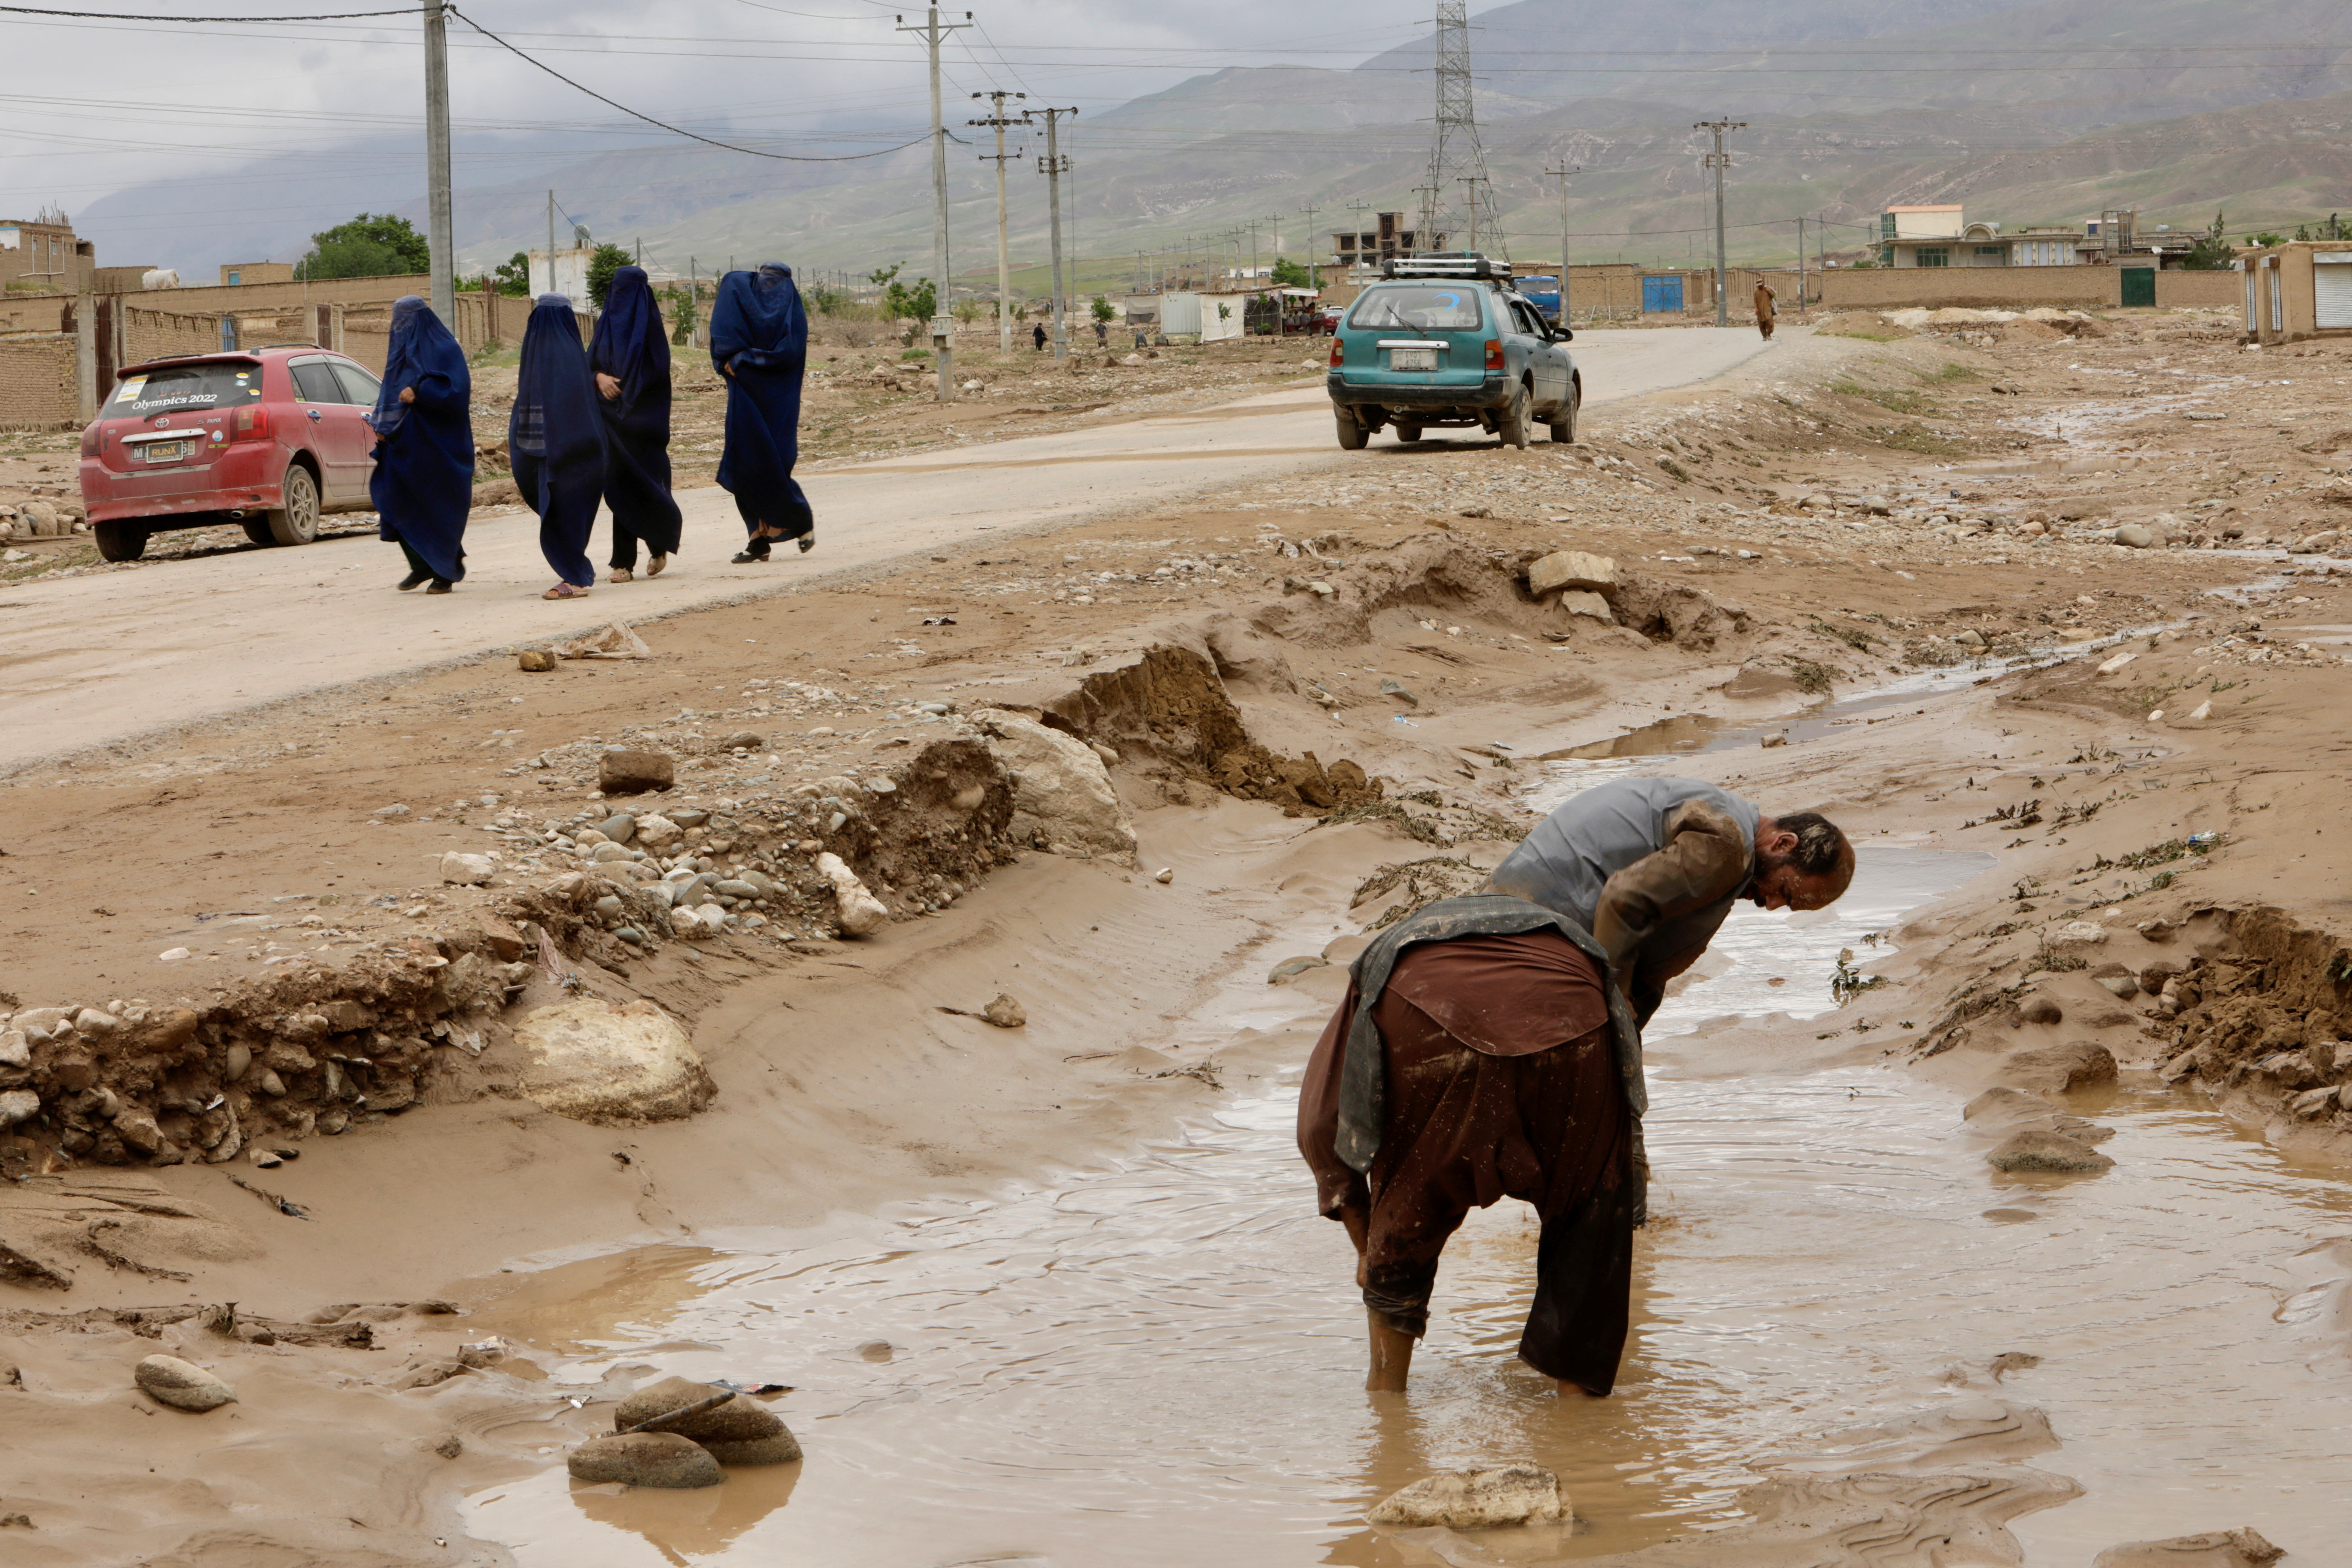 アフガニスタン北部で洪水、315人死亡